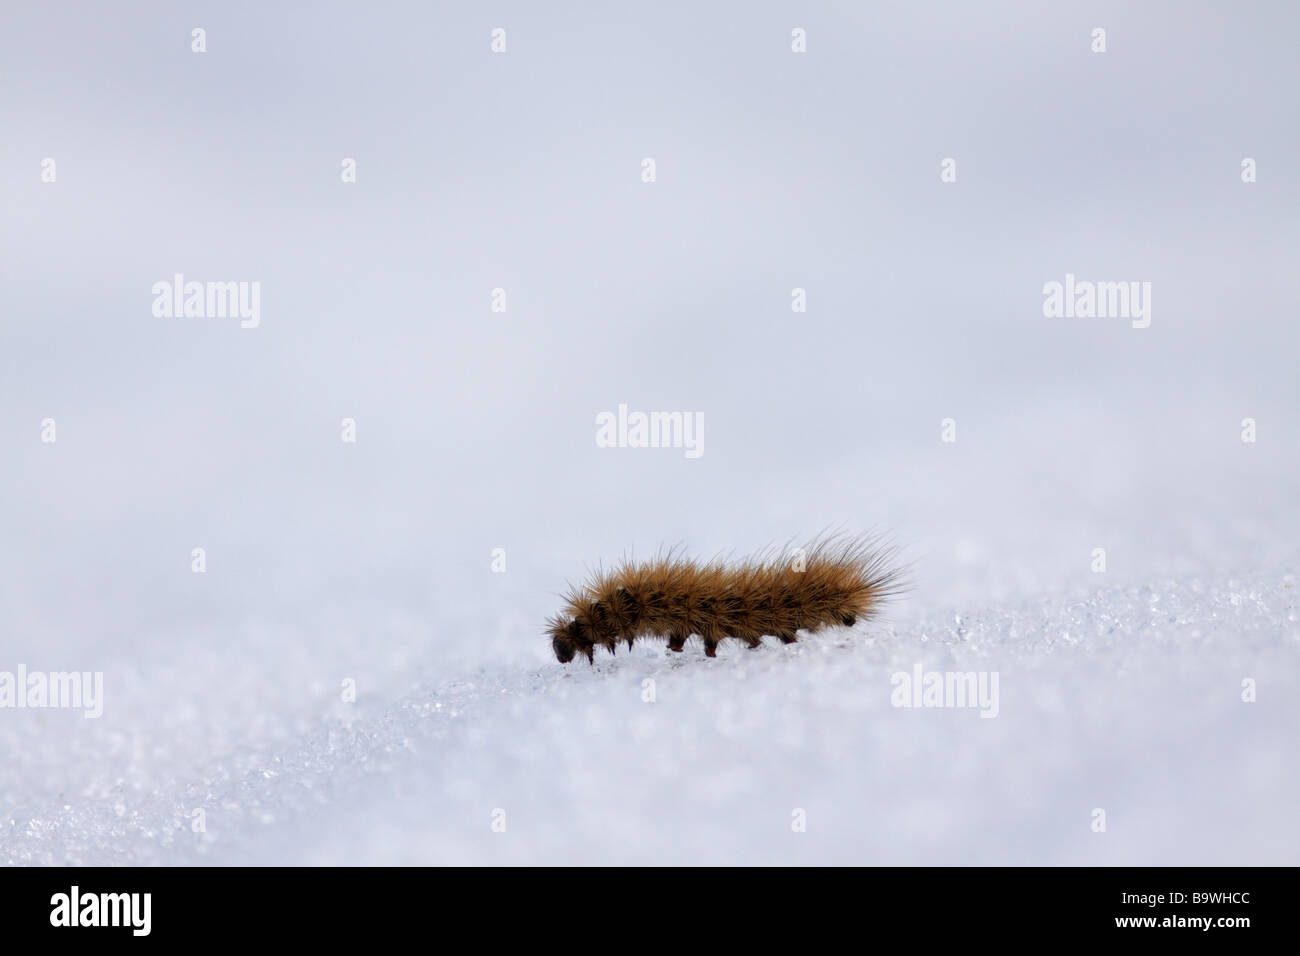 Hairy caterpillar on snow Stock Photo